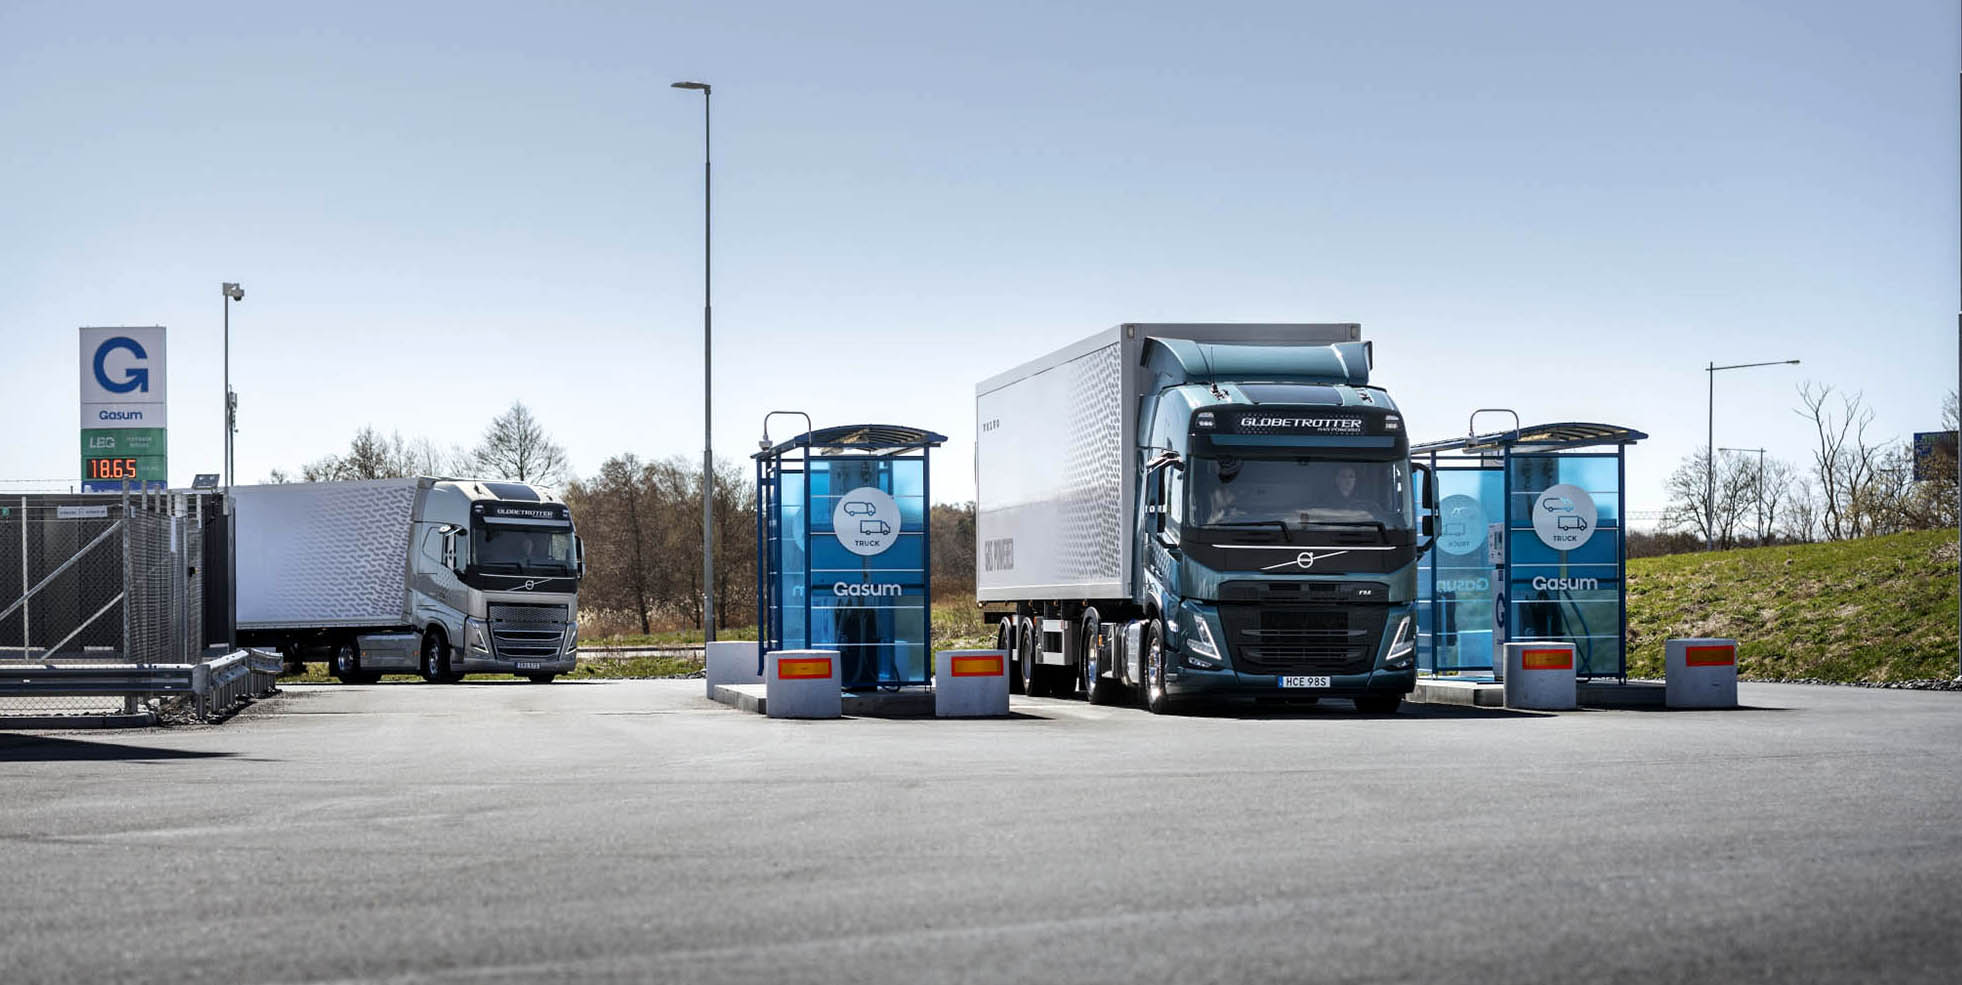 Nieuwe Volvo trucks op LNG: Nu tot 500 pk